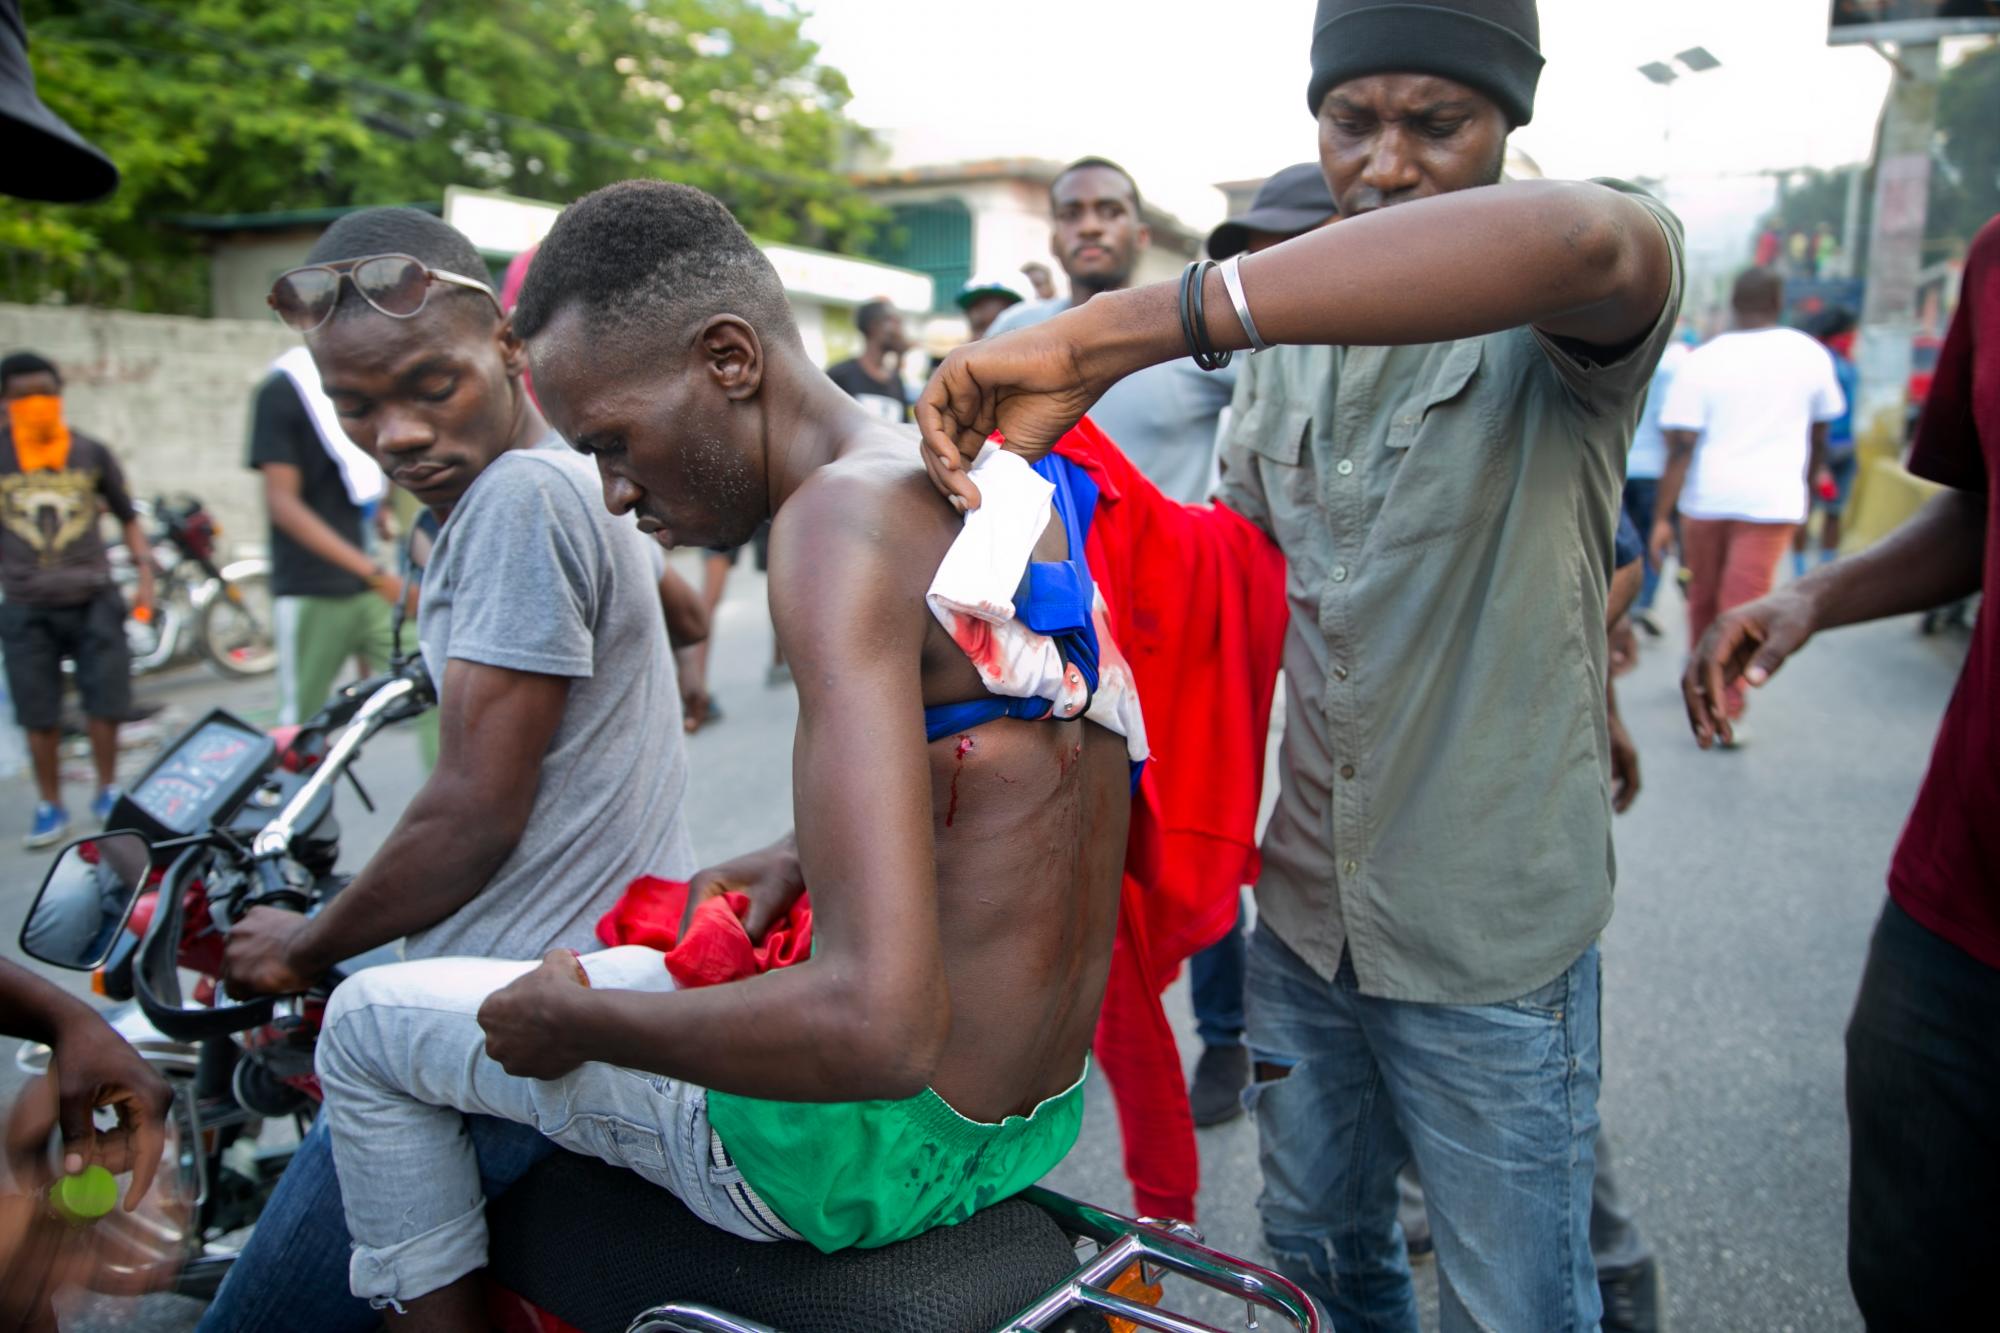 Un hombre herido es evacuado en una motocicleta durante los enfrentamientos para exigir la renuncia del presidente de Haití, Jovenel Moise, en el 216 aniversario de la Batalla de Vertieres en Puerto Príncipe, Haití, el lunes 18 de noviembre de 2019. Al menos cuatro personas fueron baleadas. y herido durante una pequeña protesta en la capital de Haití después de un discurso del presidente asediado Jovenel Moise. Un periodista local, un oficial de policía y dos manifestantes fueron trasladados rápidamente con heridas de bala aparentes. 